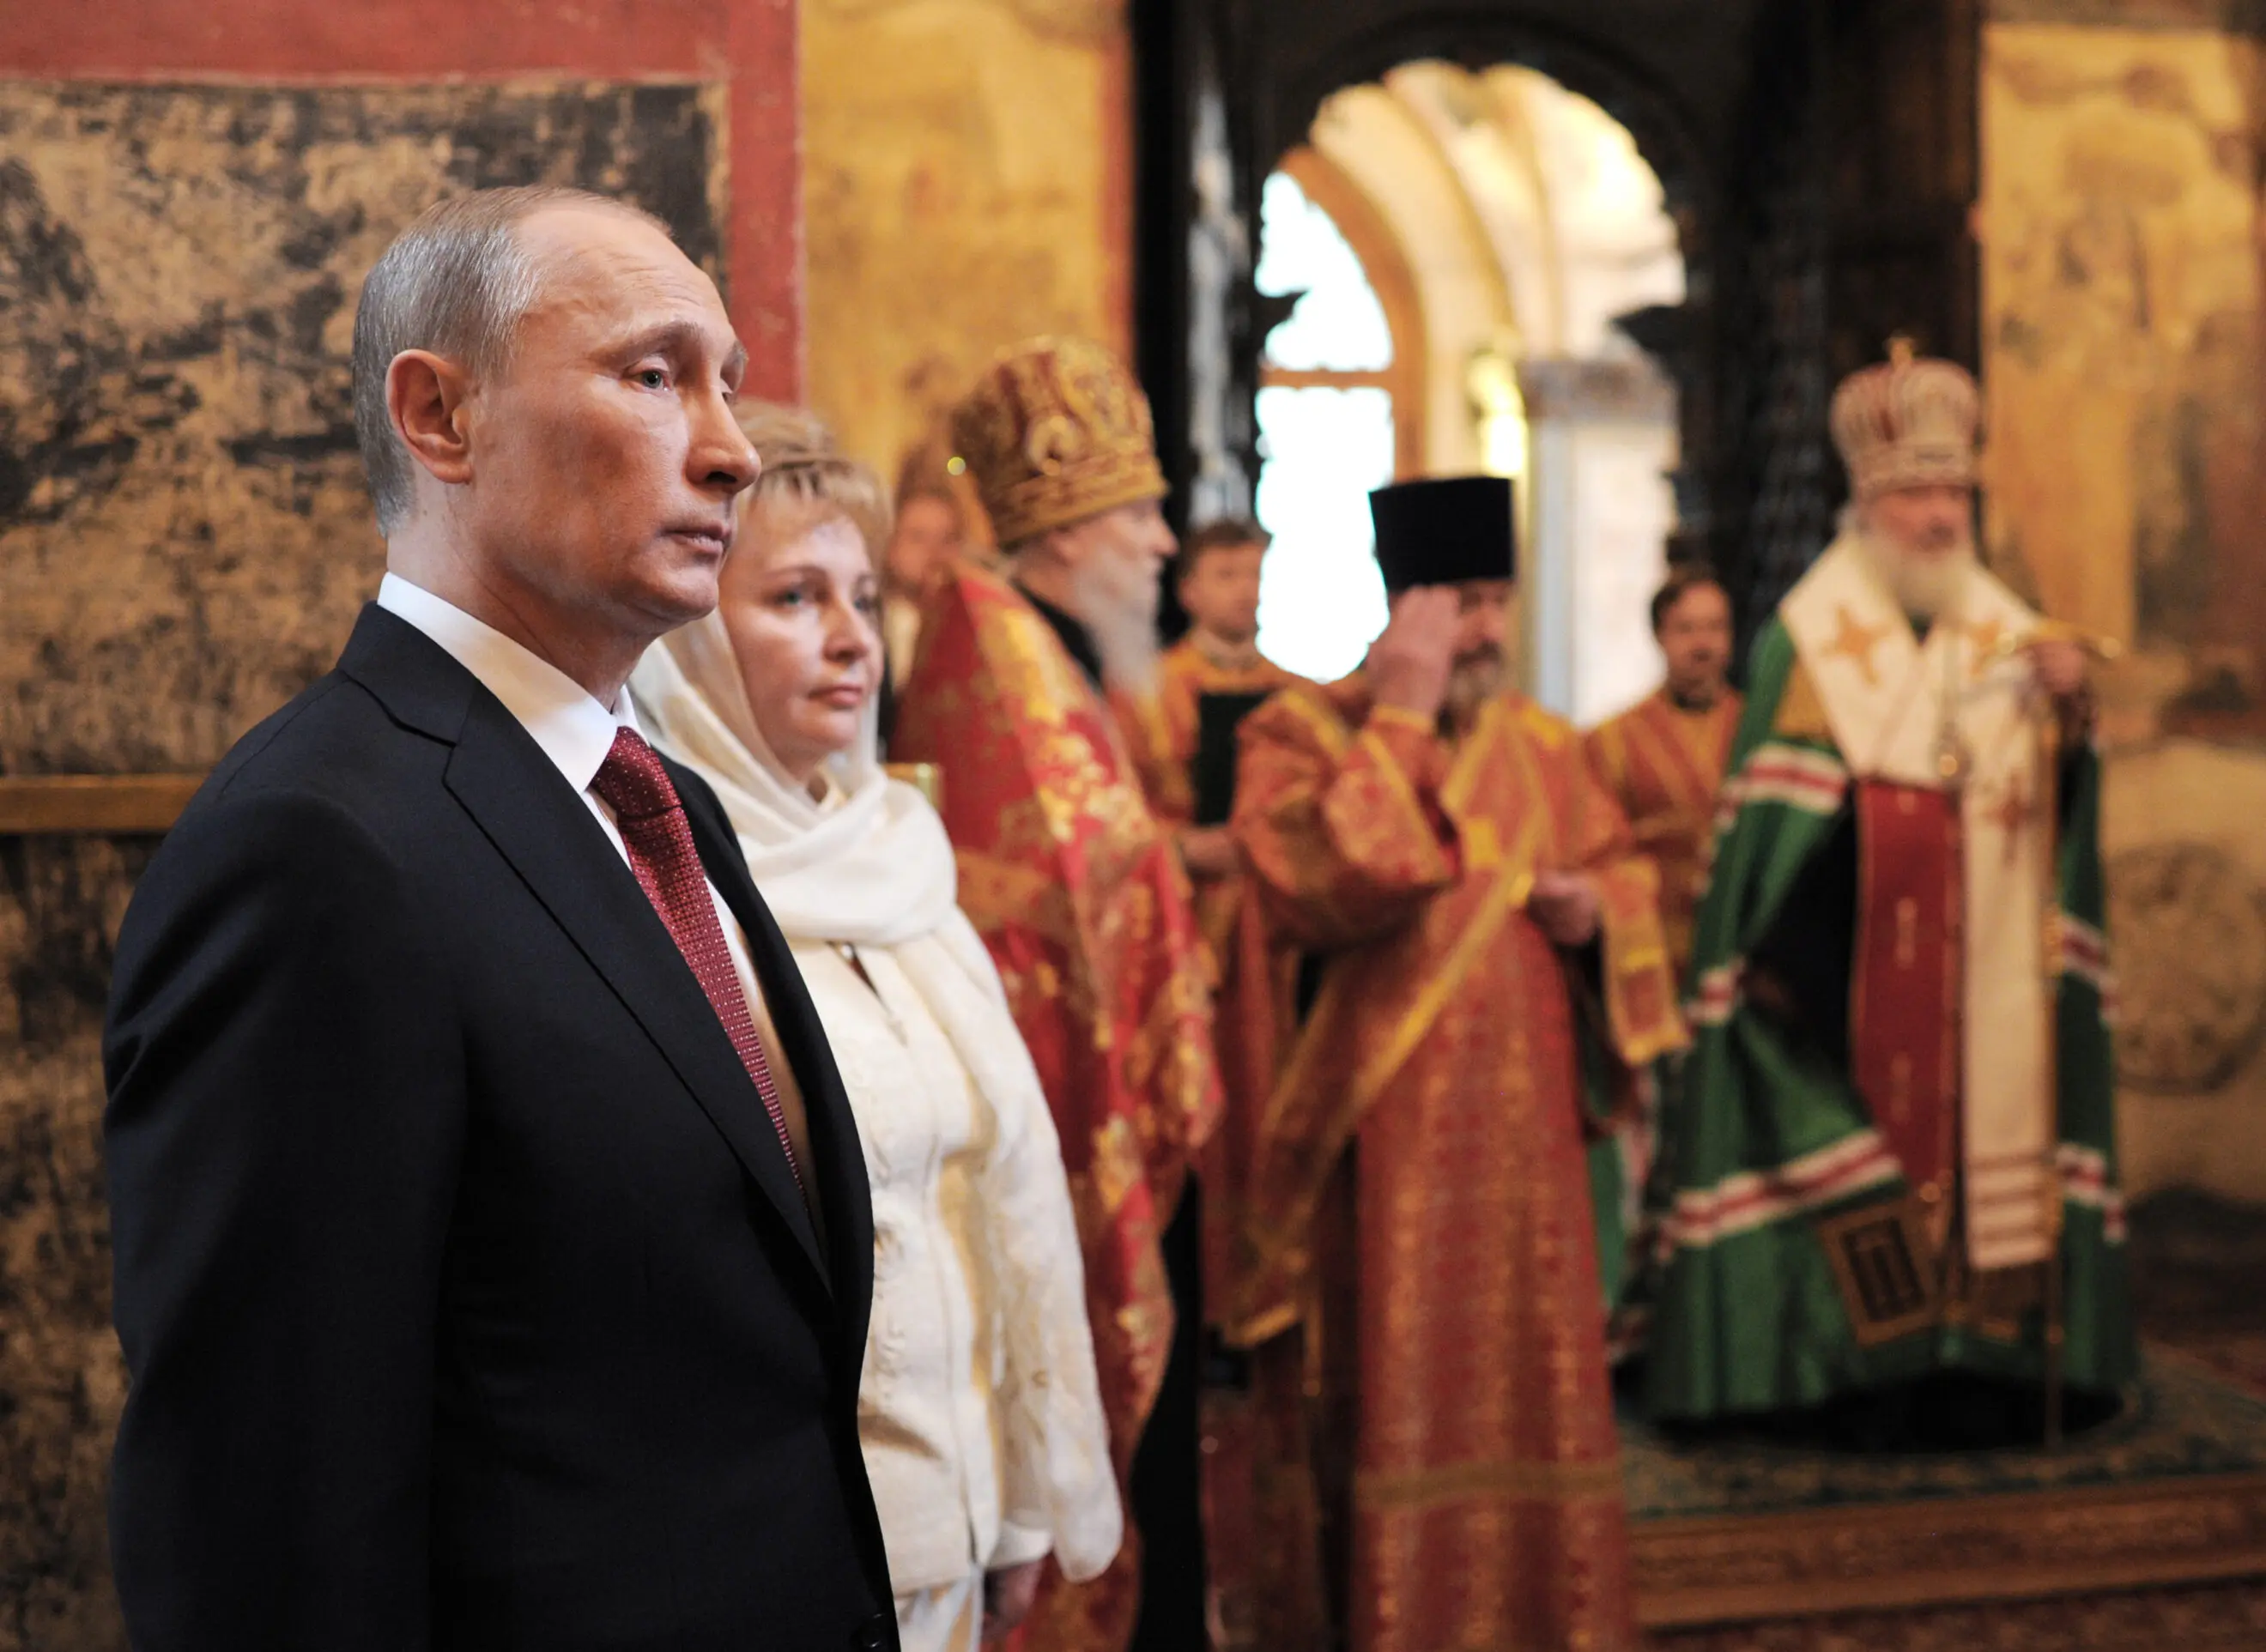 ولادیمیر پوتین رئیس جمهور روسیه